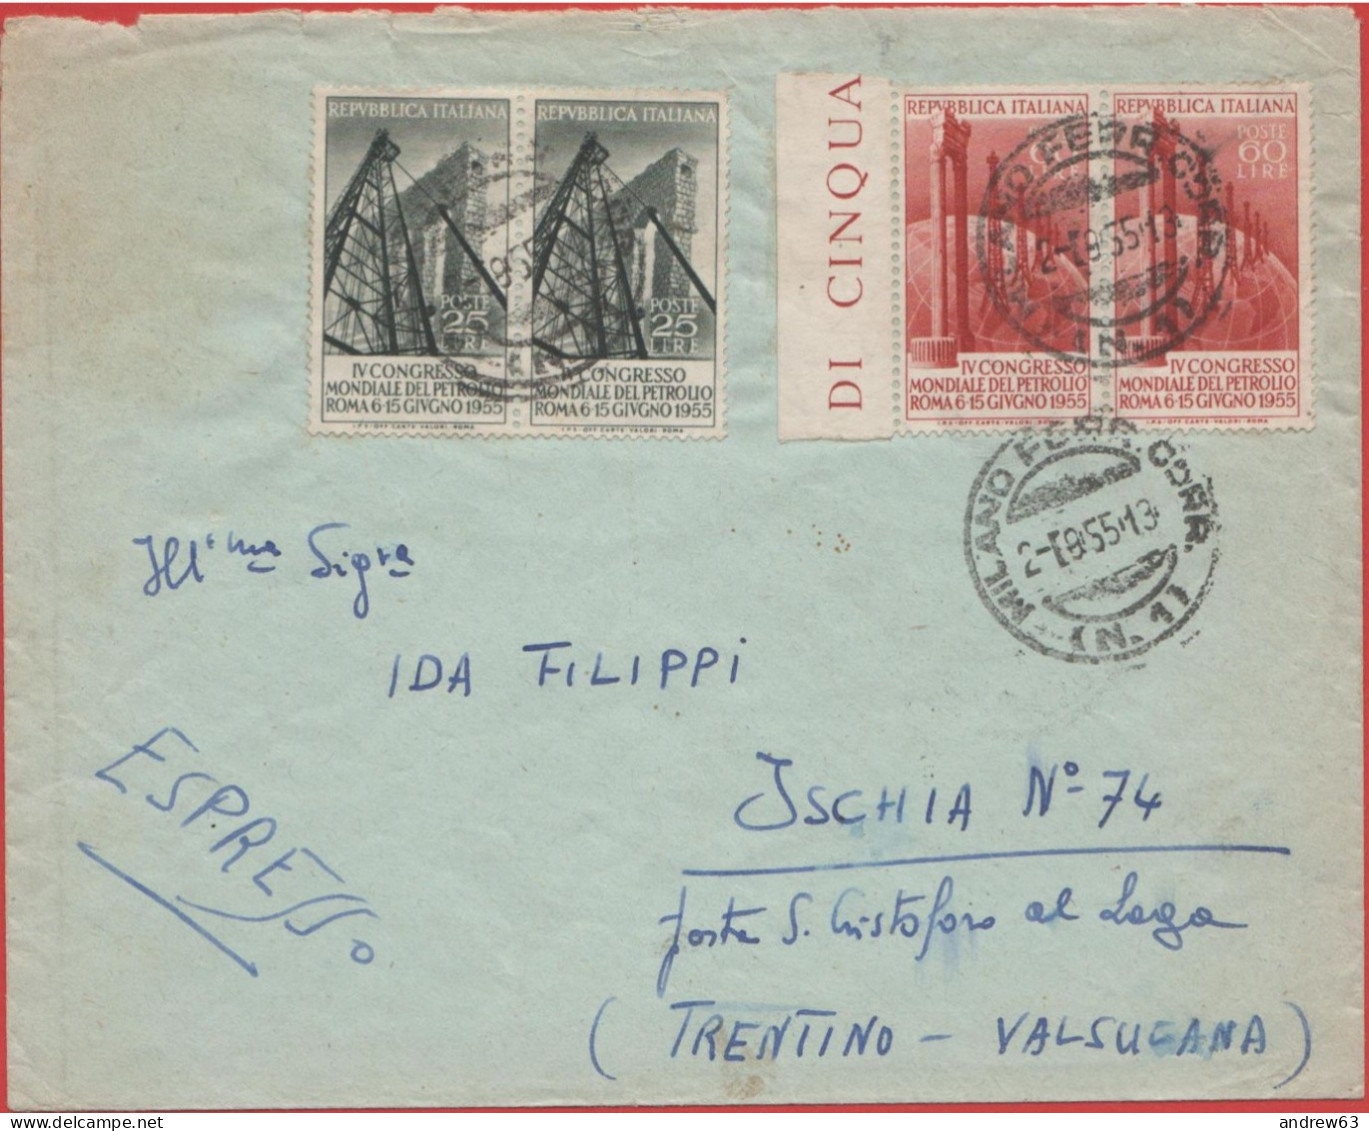 ITALIA - Storia Postale Repubblica - 1955 - 2x 25 + 2x 60 4º Congresso Mondiale Del Petrolio A Roma- Viaggiata Da Milano - Express/pneumatic Mail